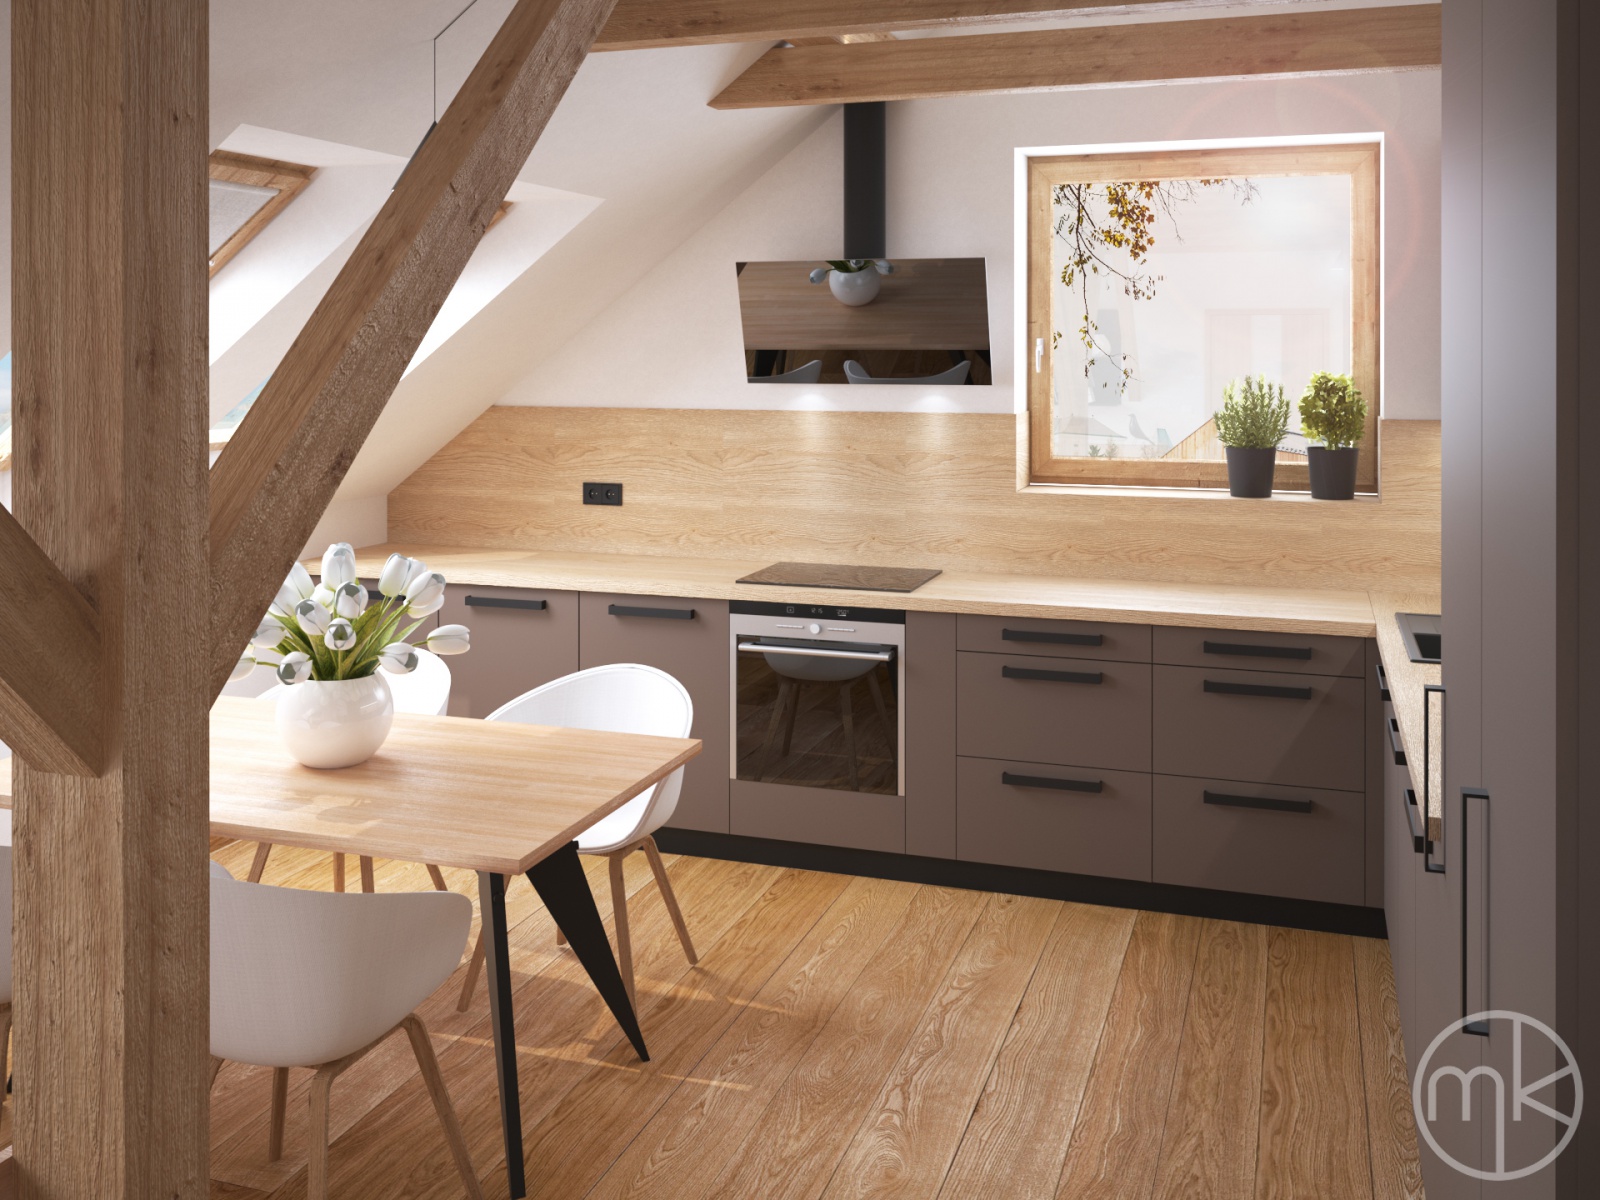 moderni kuchyn drevo - MK arch